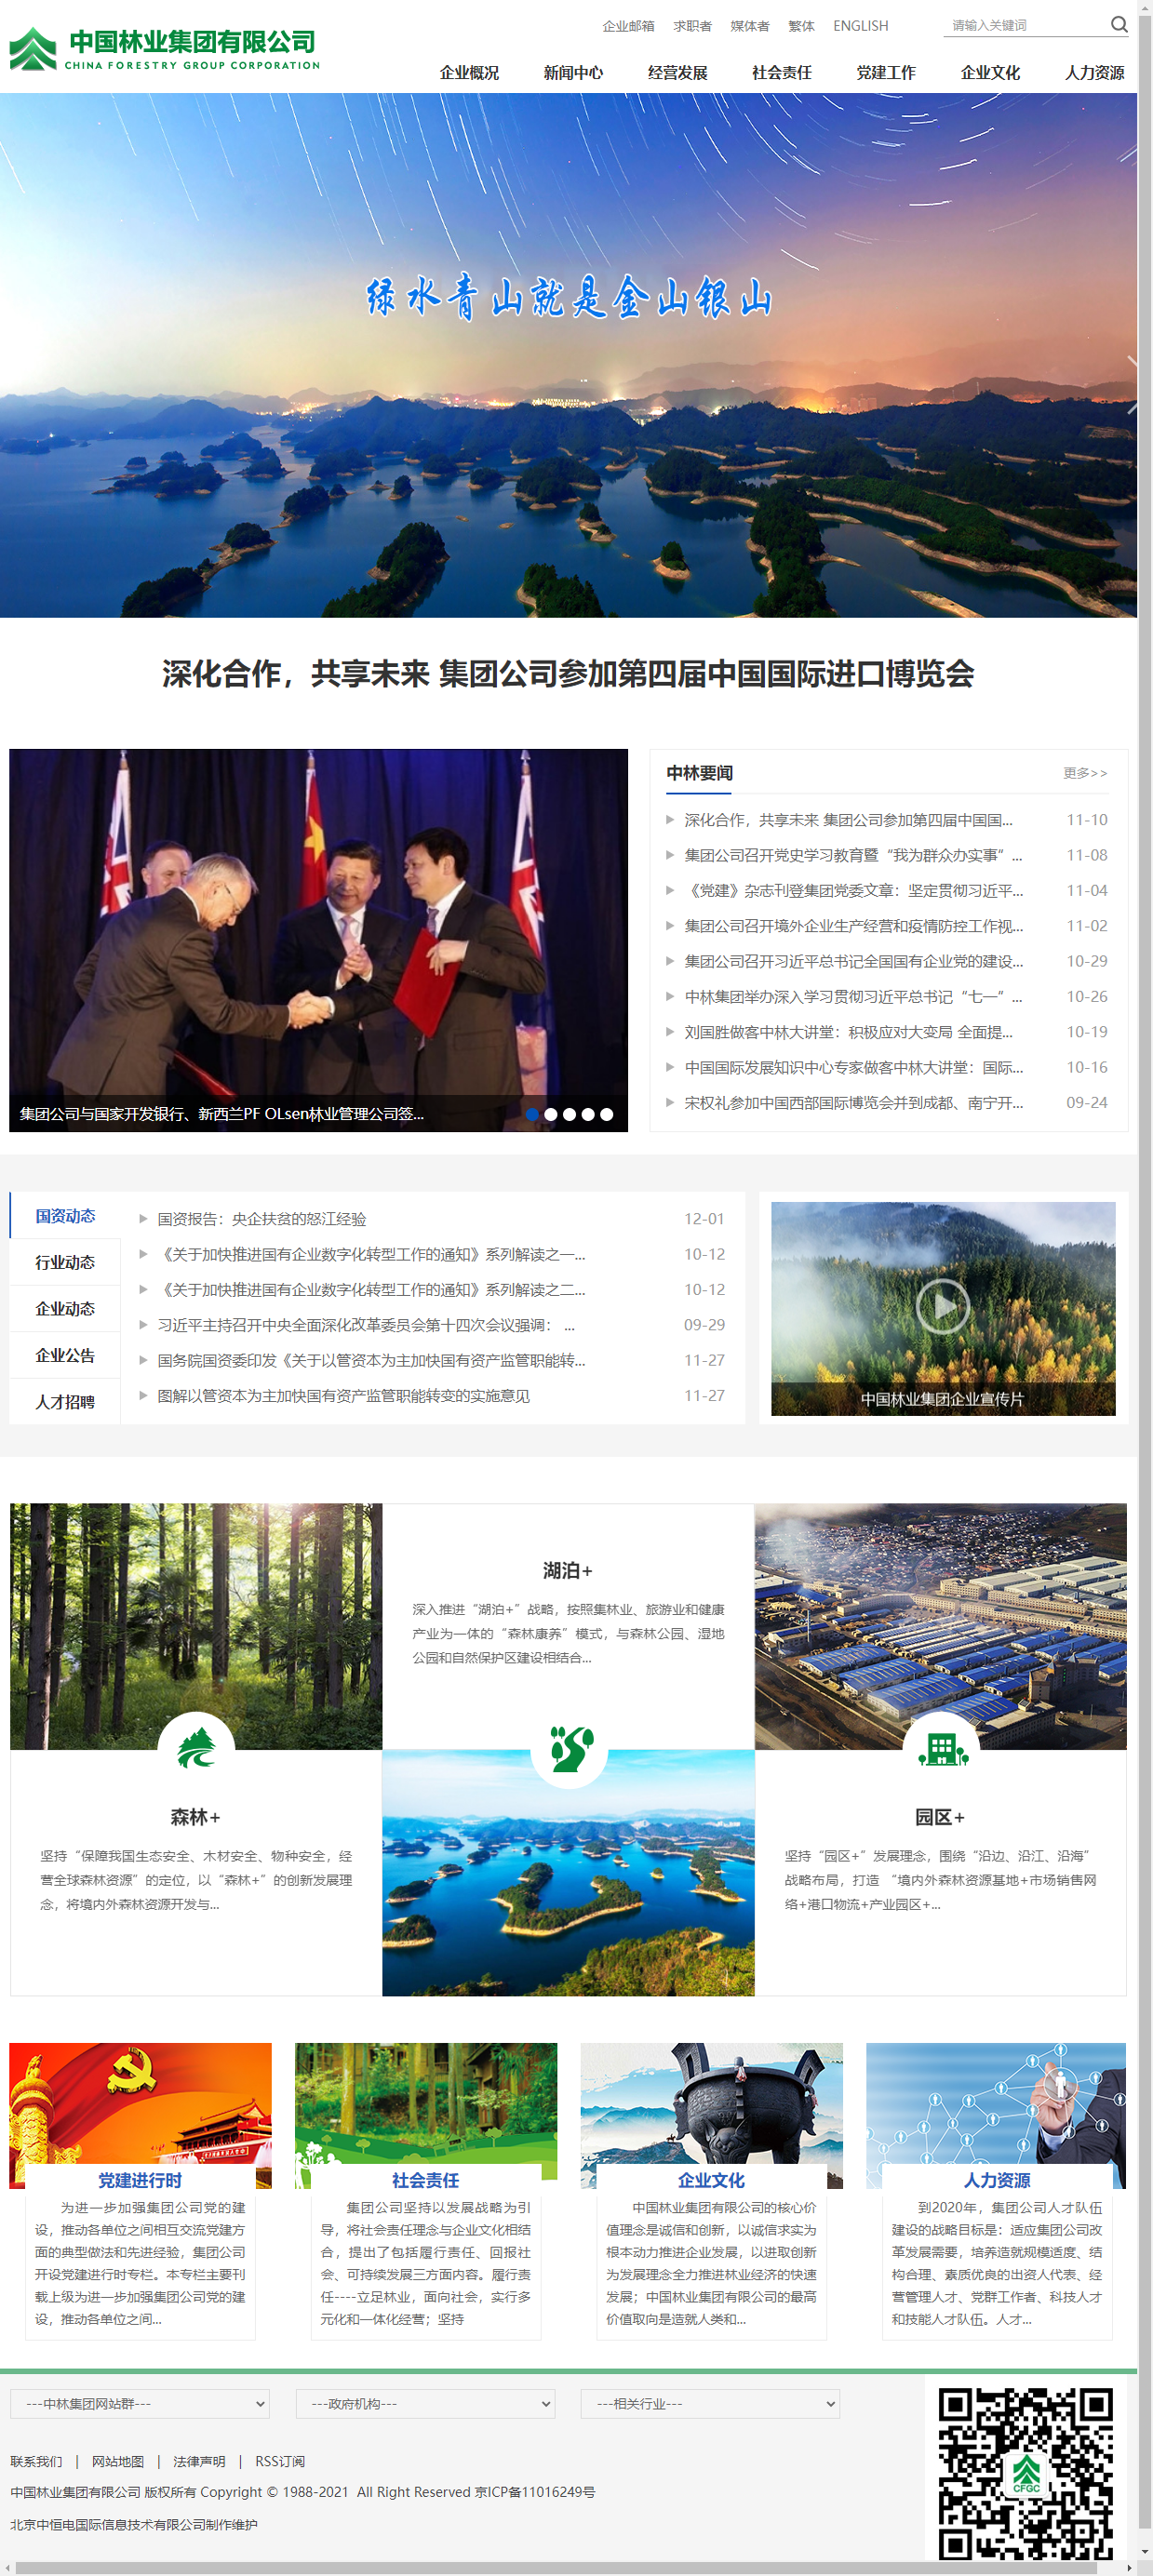 中国林业集团有限公司网站案例